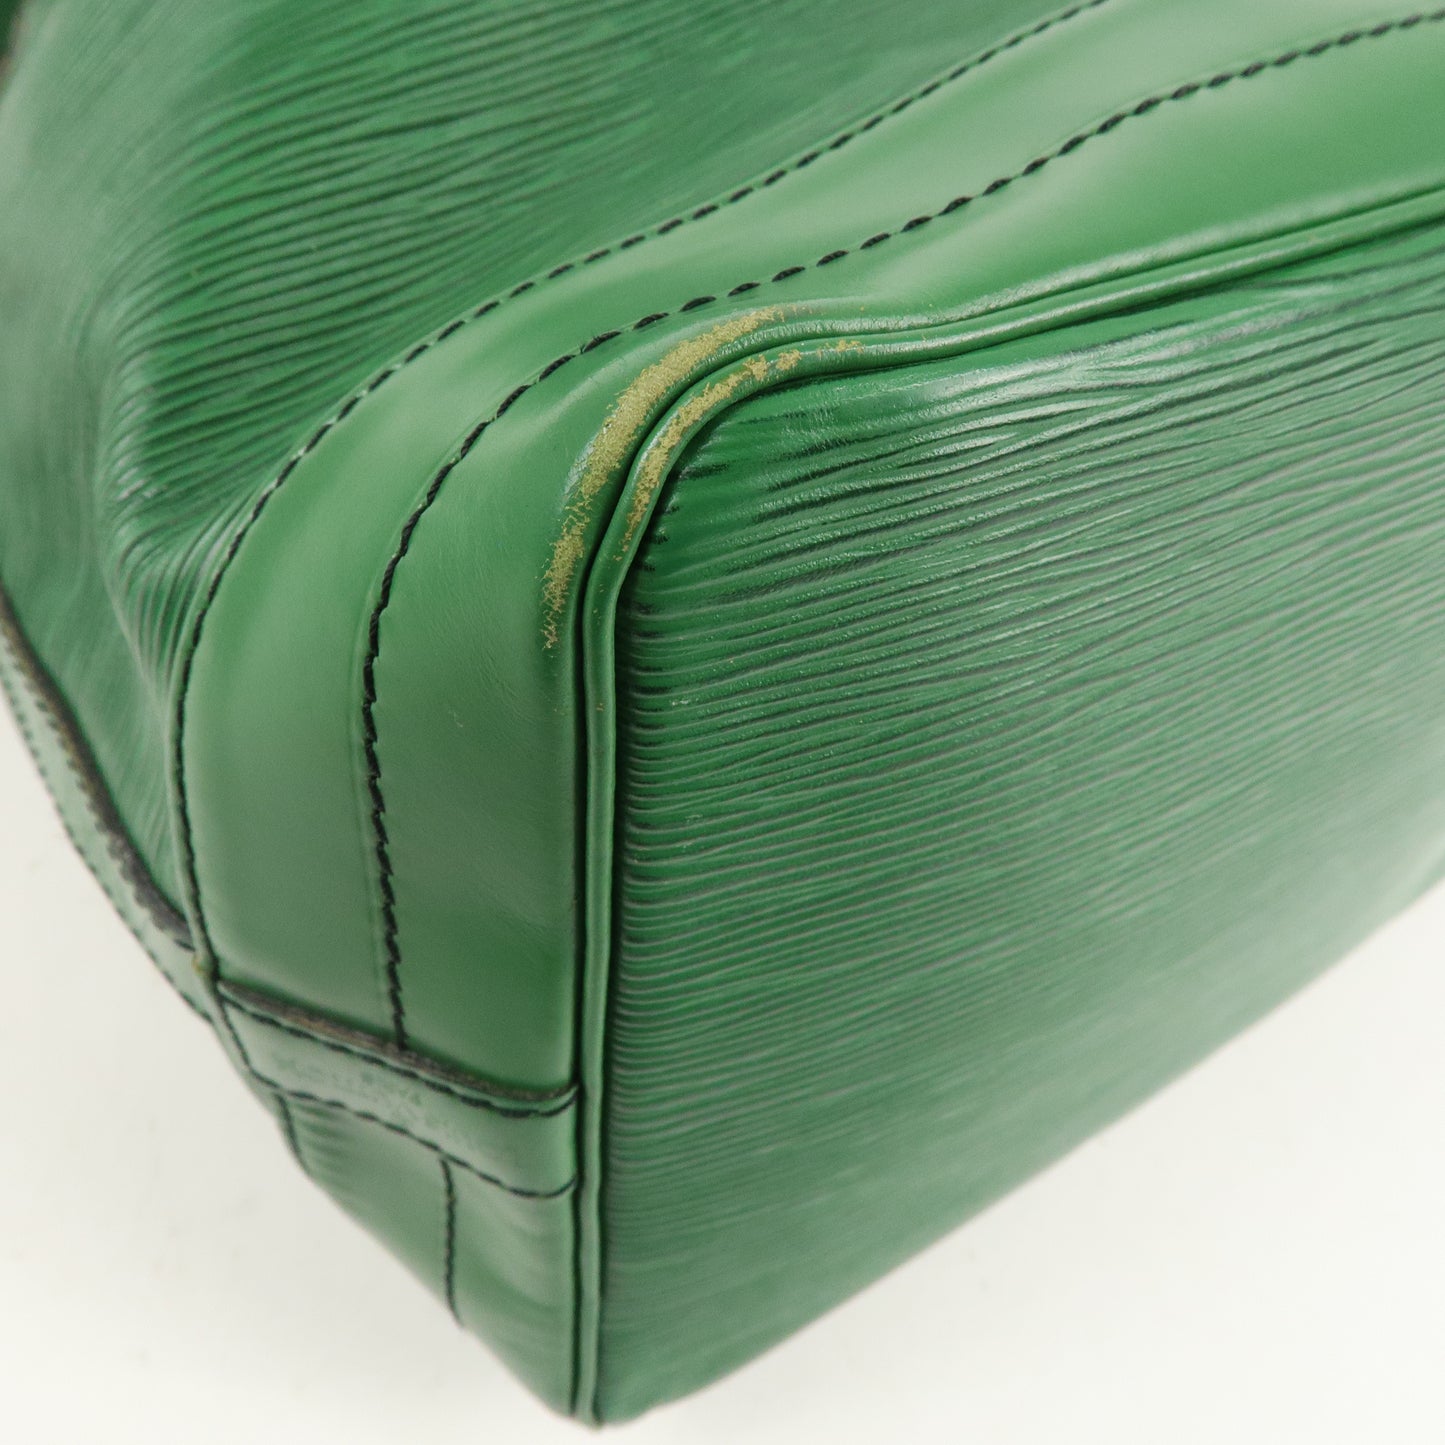 Louis Vuitton Epi Leather Noe Shoulder Bag Borneo Green M44004